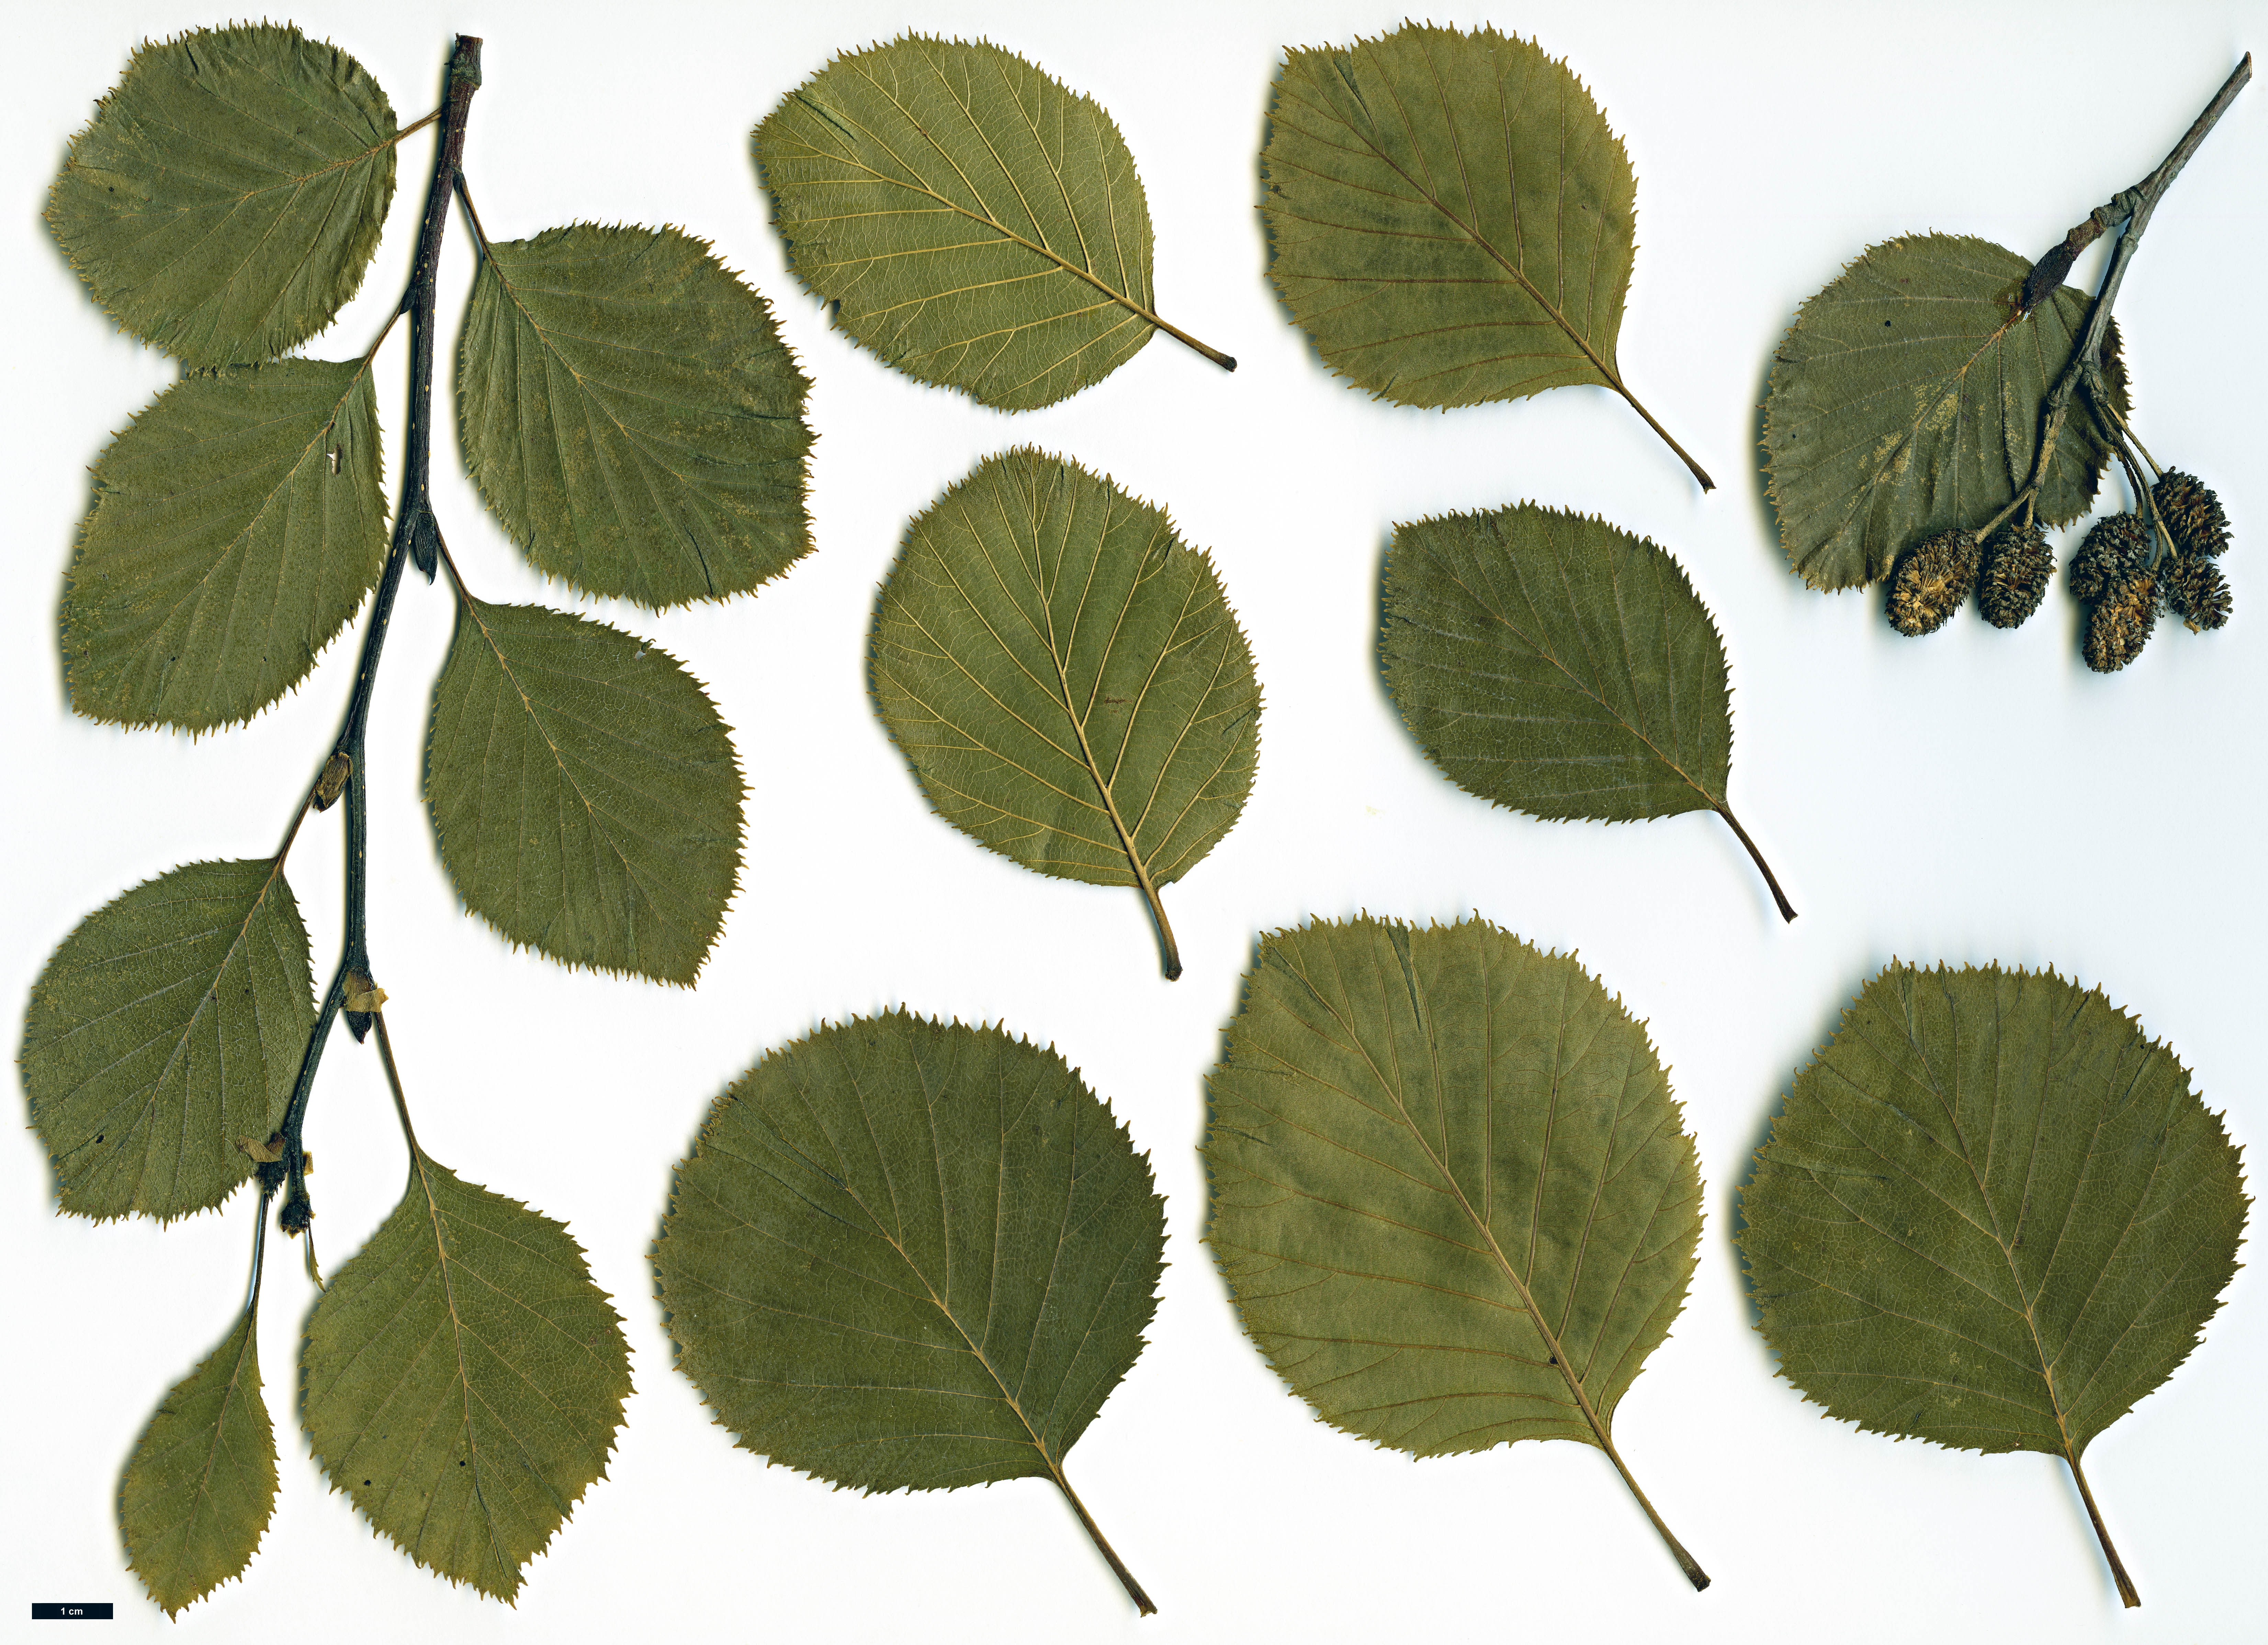 High resolution image: Family: Betulaceae - Genus: Alnus - Taxon: alnobetula - SpeciesSub: subsp. suaveolens